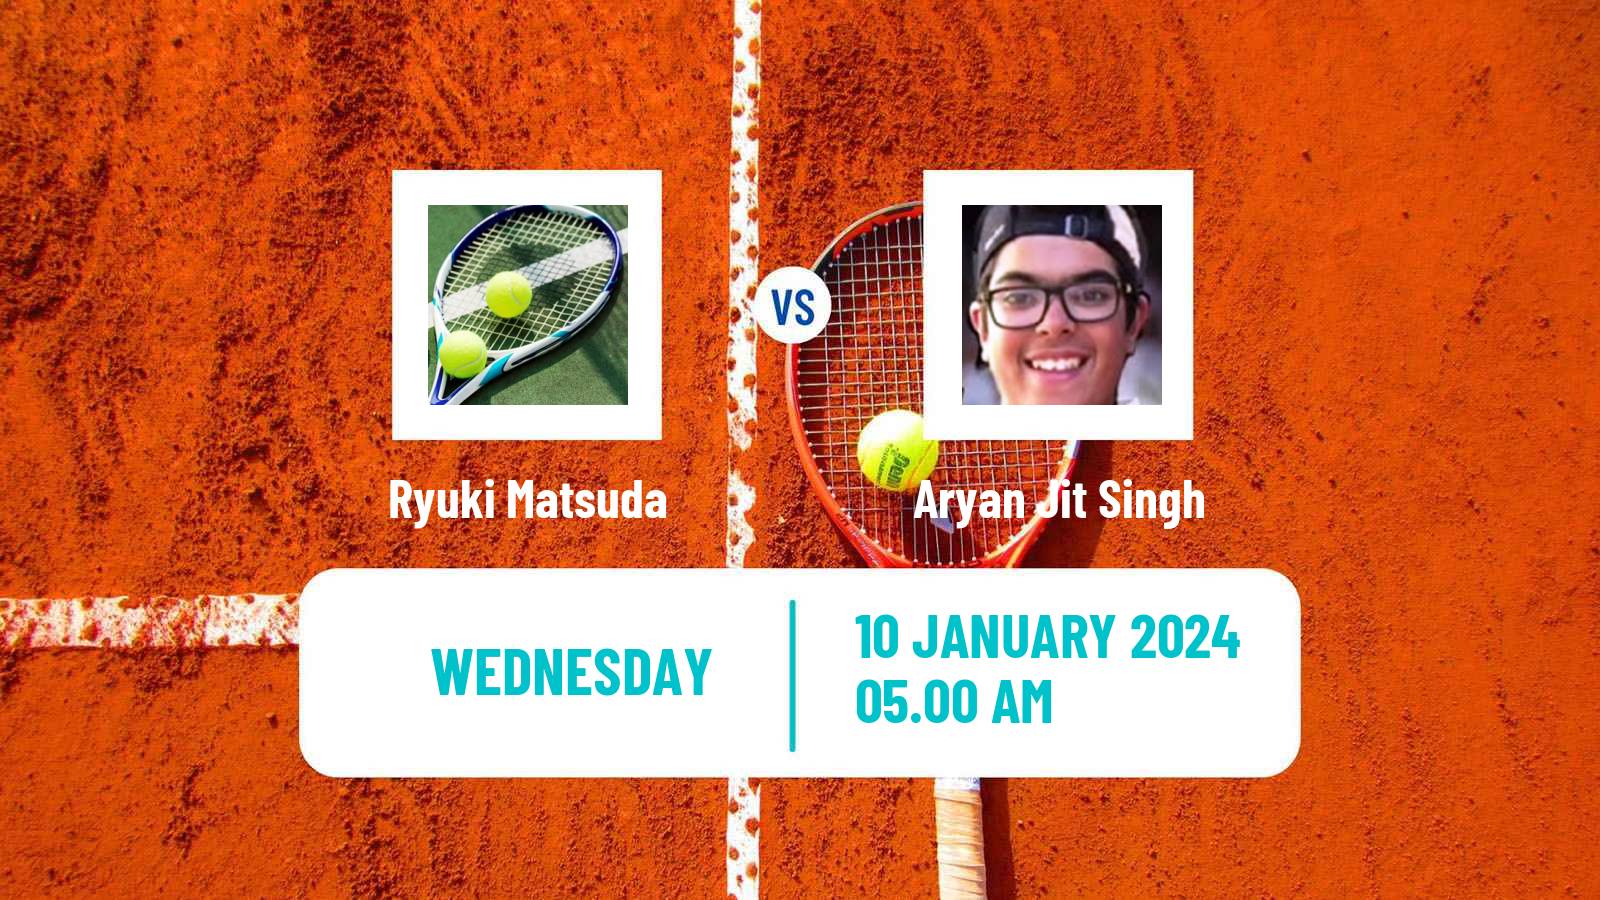 Tennis ITF M15 Monastir 2 Men Ryuki Matsuda - Aryan Jit Singh